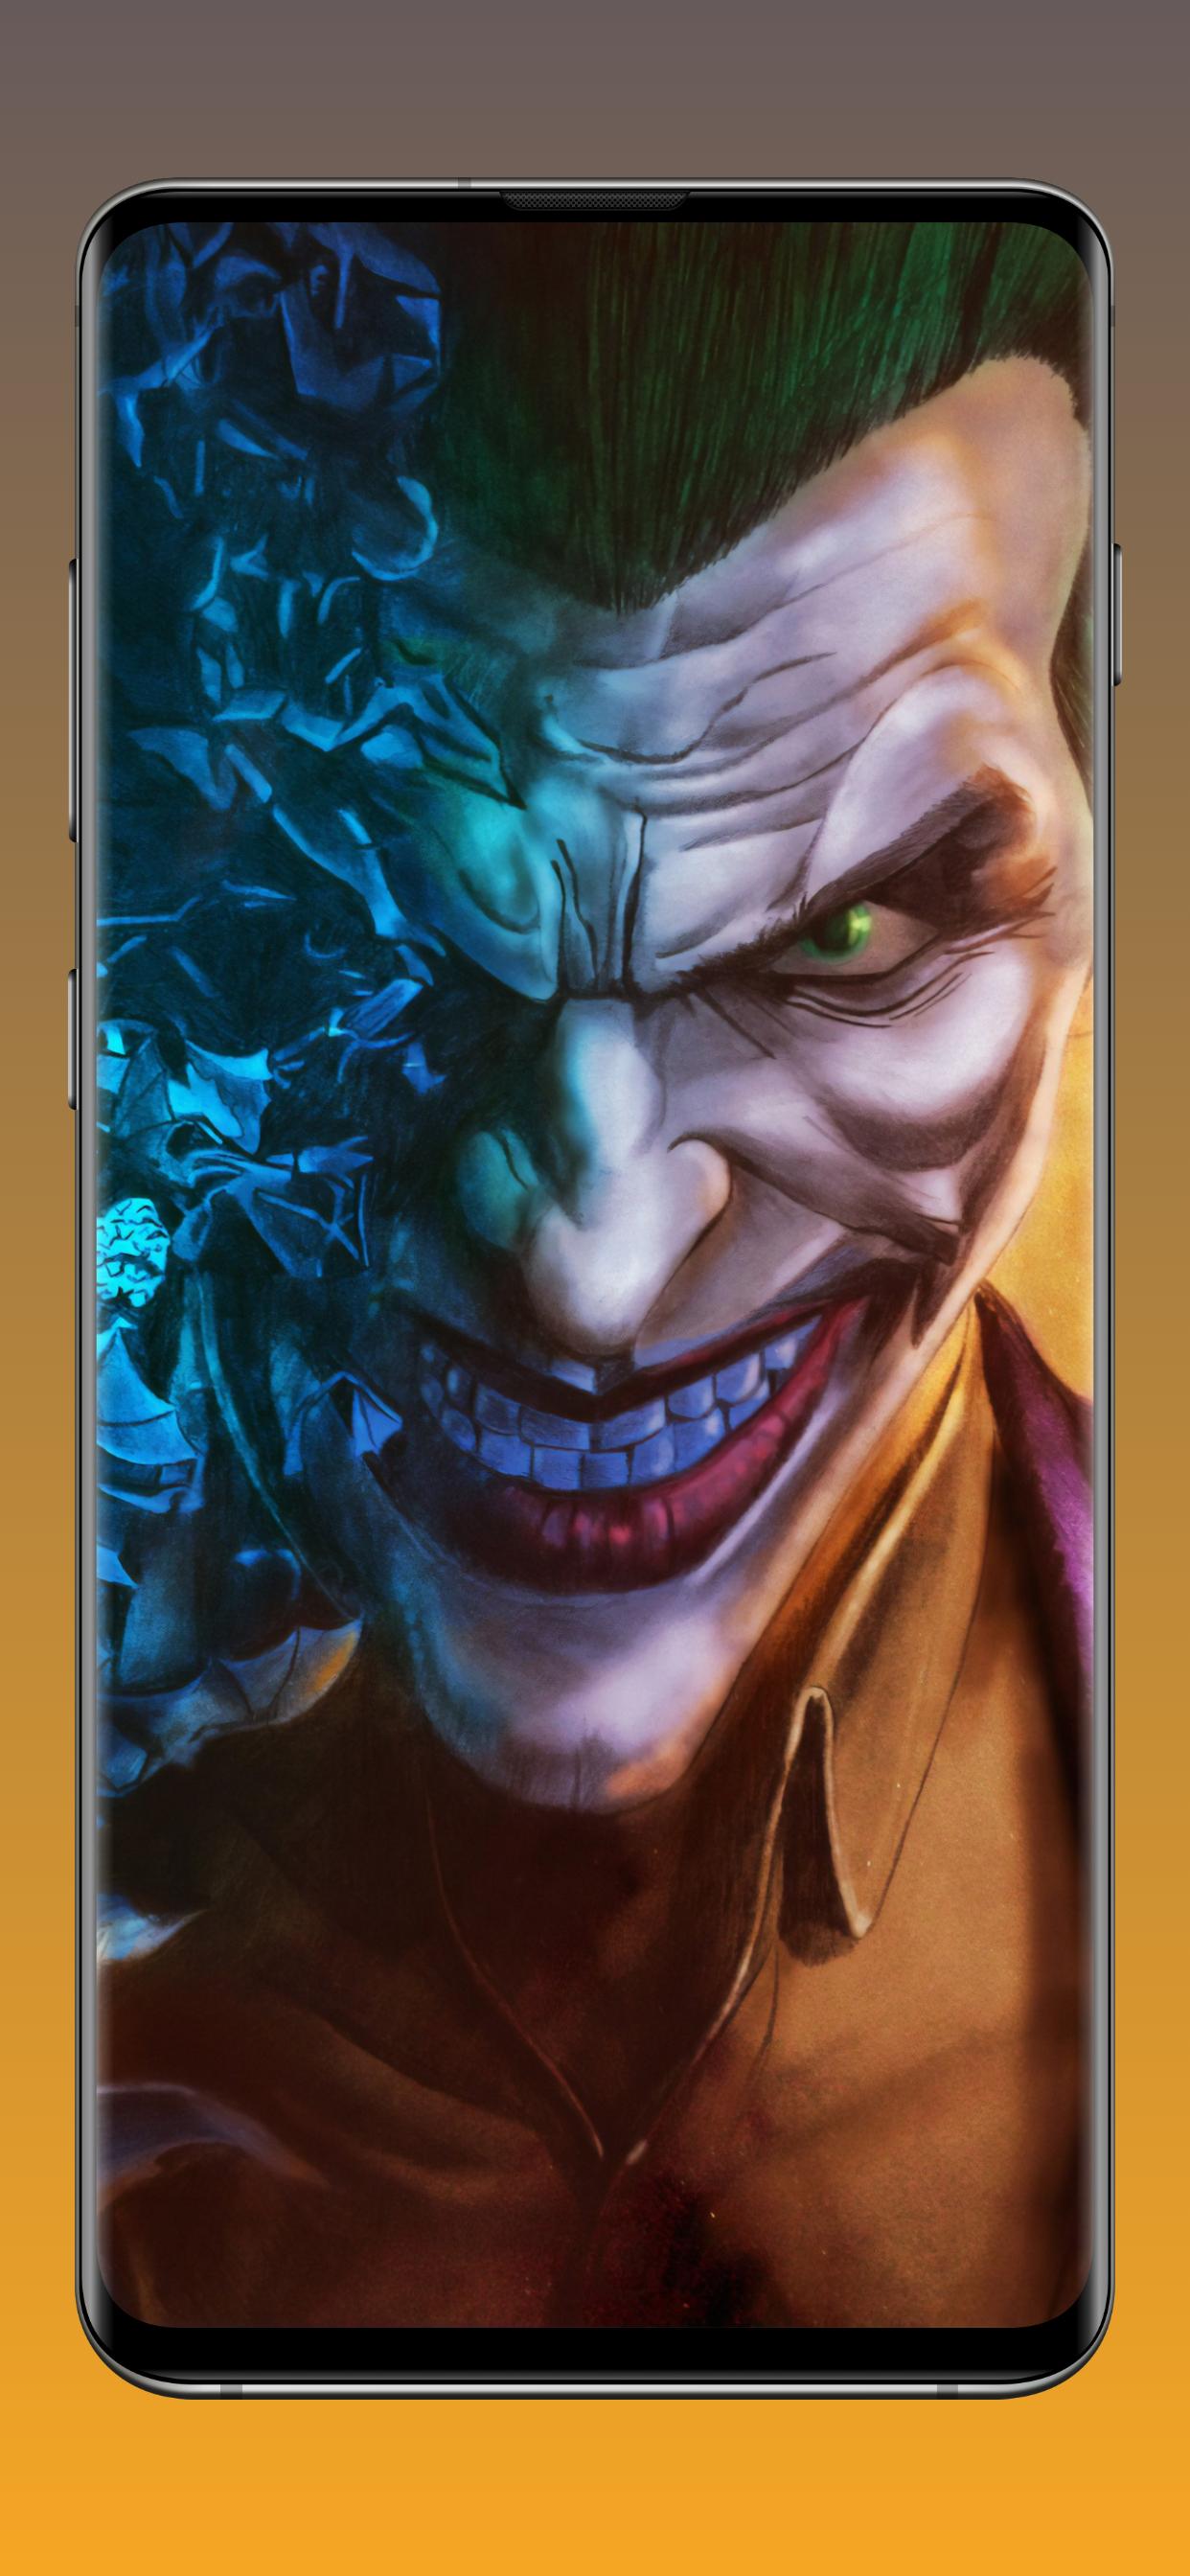 2021 joker apk download Joker123 Online